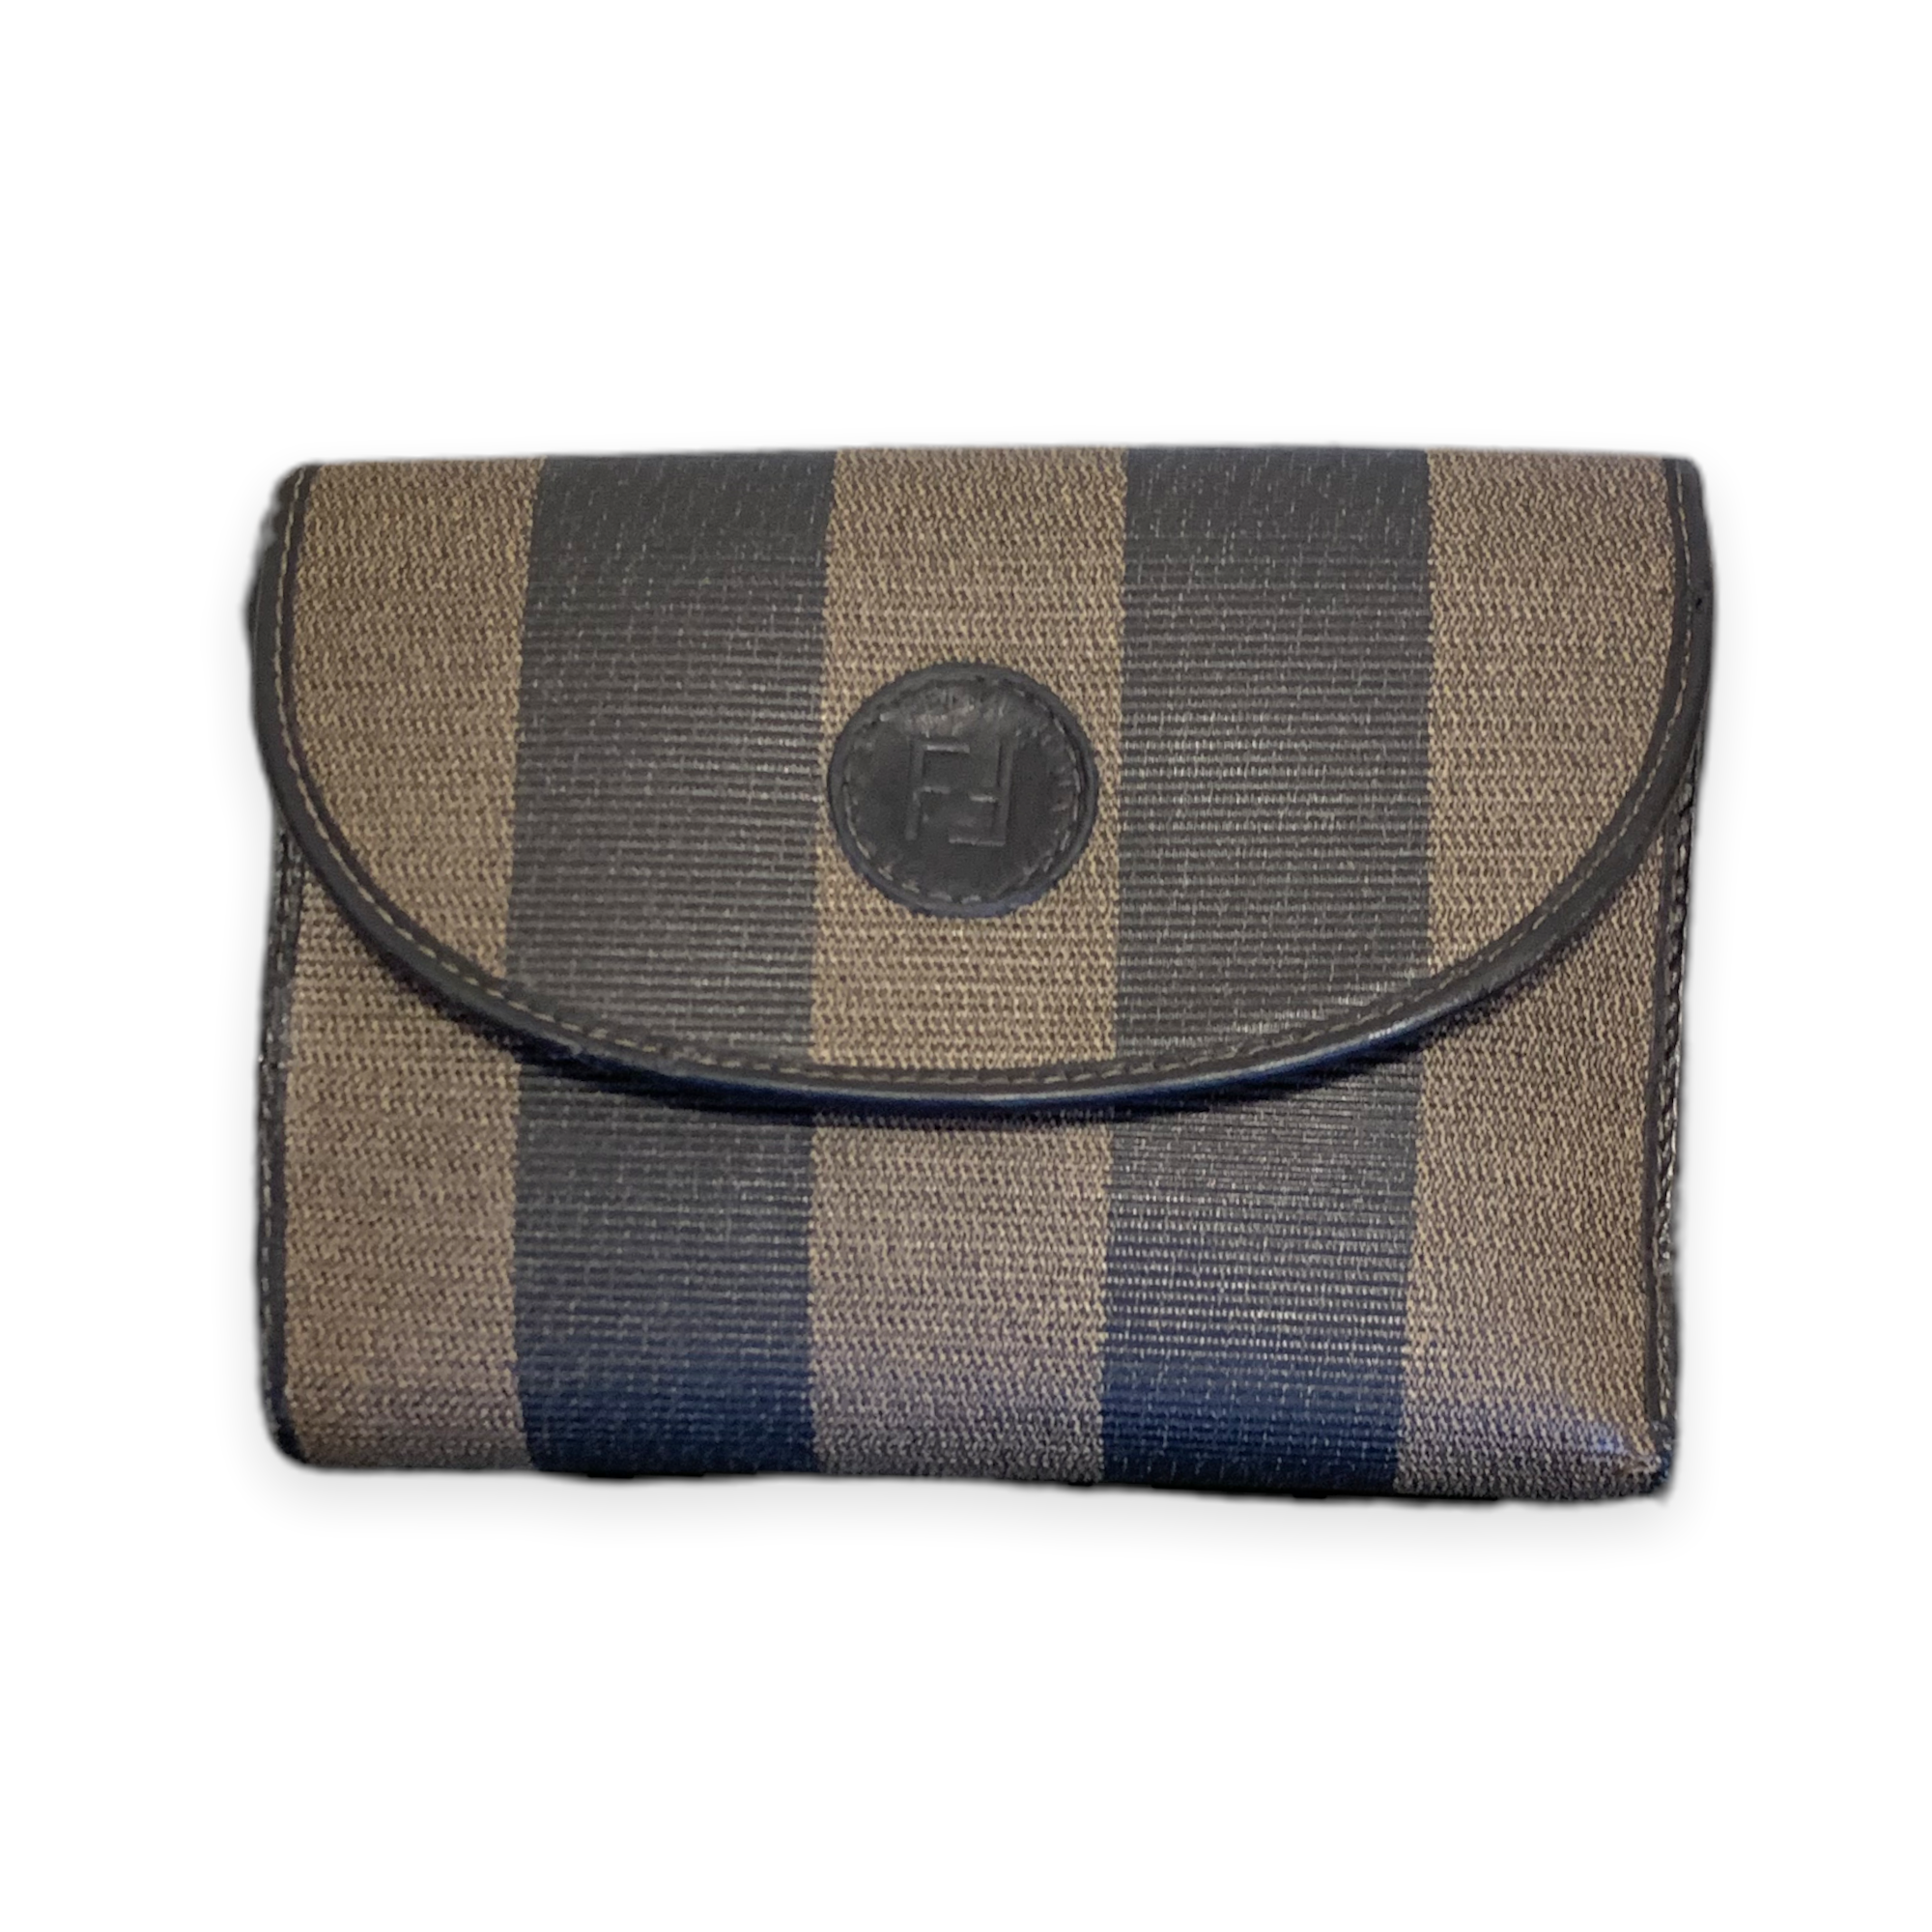 Vintage FENDI Authentic Women's Stripe S.A.S & Leather Trim Tri-fold Wallet